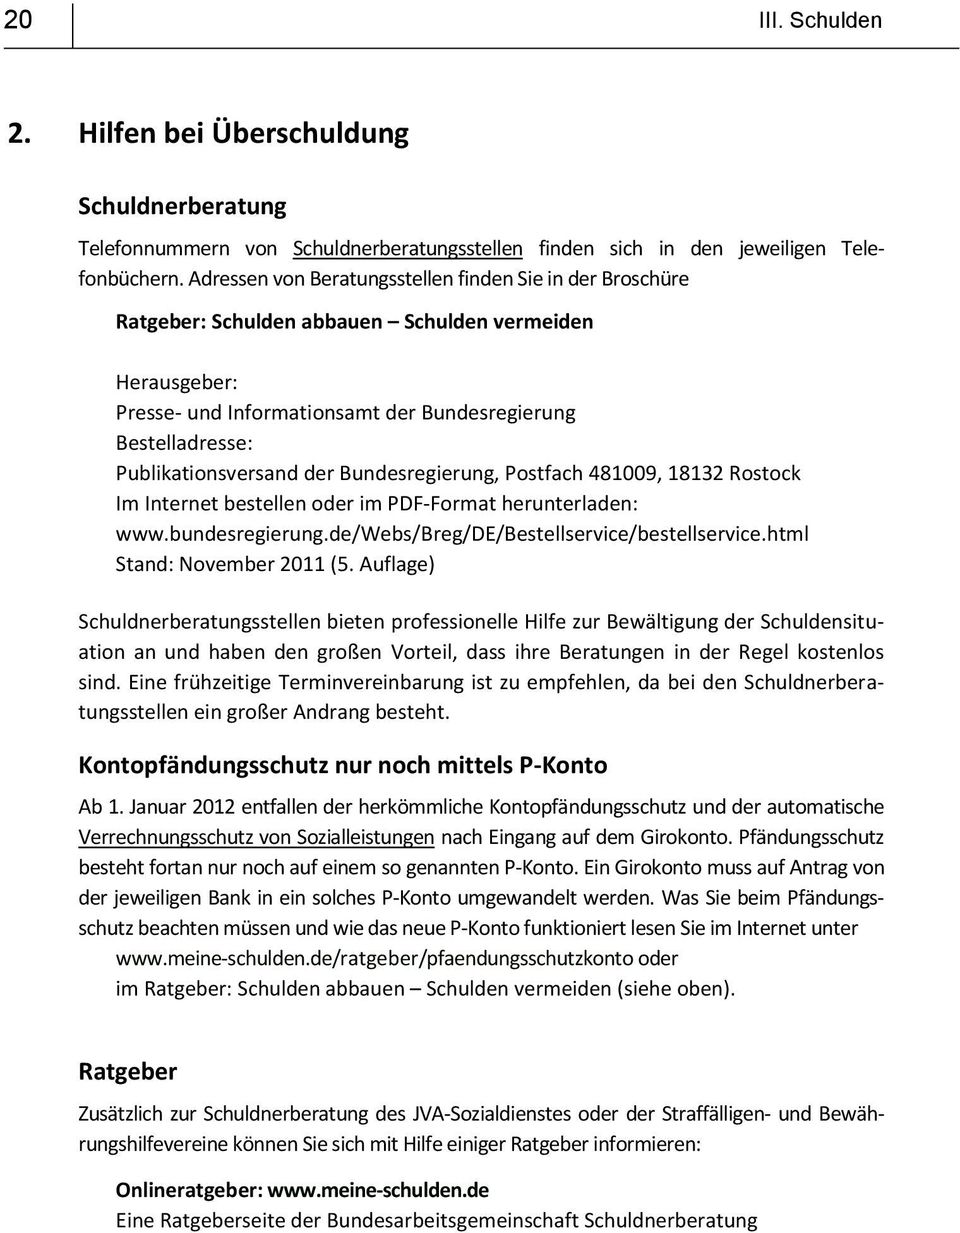 Publikationsversand der Bundesregierung, Postfach 481009, 18132 Rostock Im Internet bestellen oder im PDF-Format herunterladen: www.bundesregierung.de/webs/breg/de/bestellservice/bestellservice.